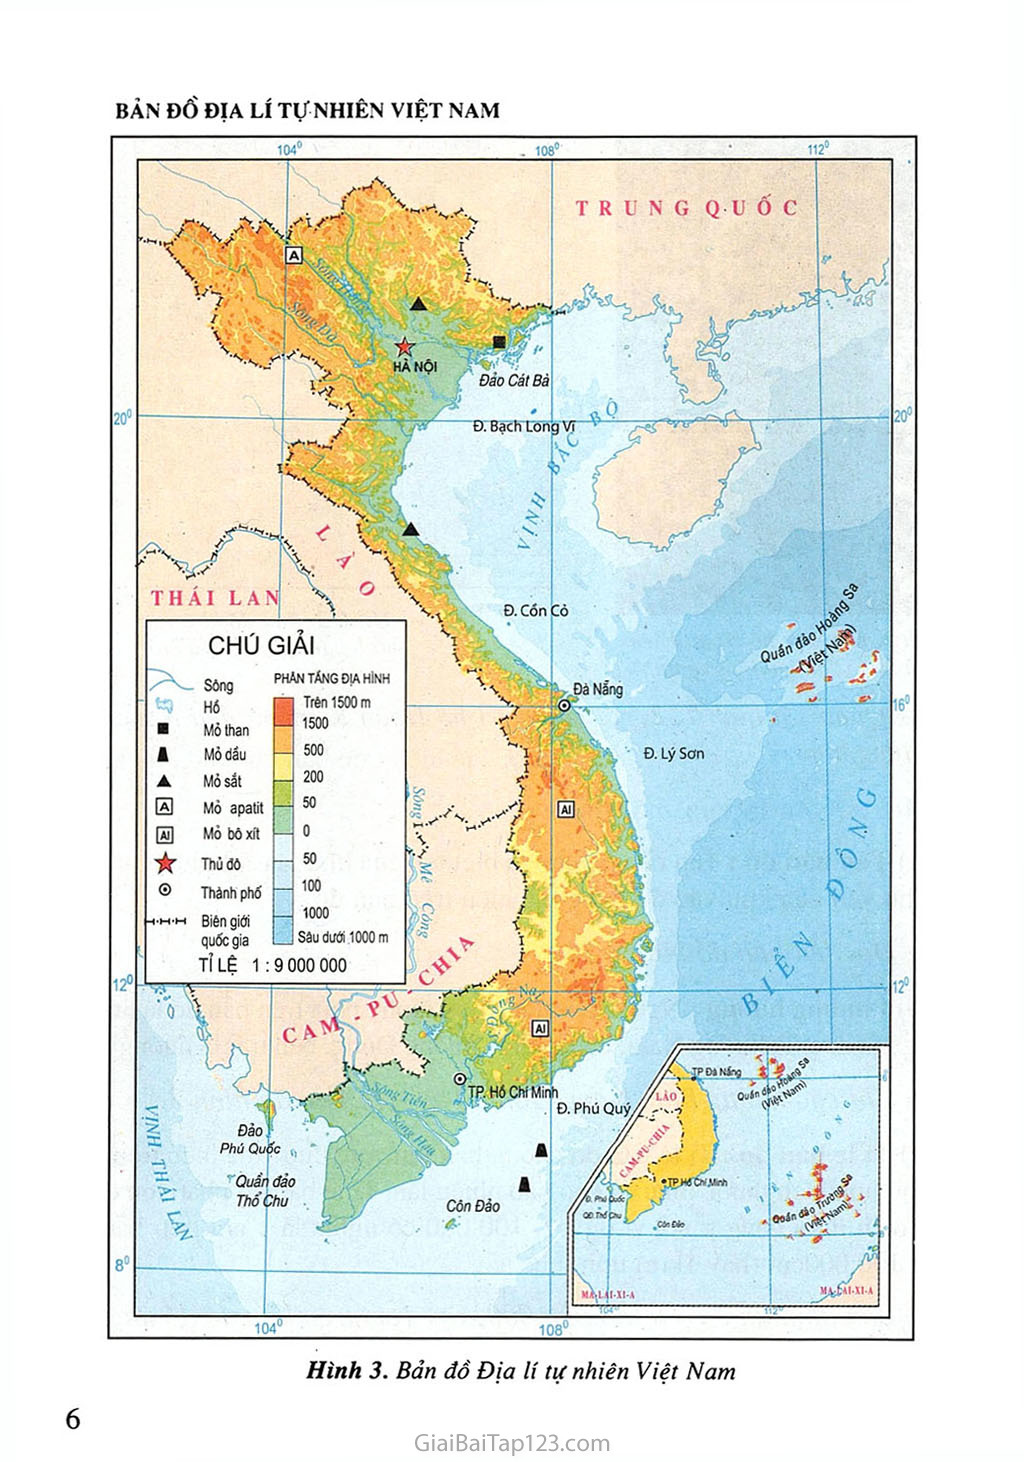 Việt Nam có địa lí tự nhiên đa dạng với rừng nhiệt đới, sa mạc, đồi núi và vùng biển phong phú. Việt Nam cũng được biết đến với các khu bảo tồn thiên nhiên quý giá như Vườn quốc gia Phong Nha-Kẻ Bàng và Vịnh Hạ Long. Hãy khám phá những bí mật của địa lí tự nhiên Việt Nam.